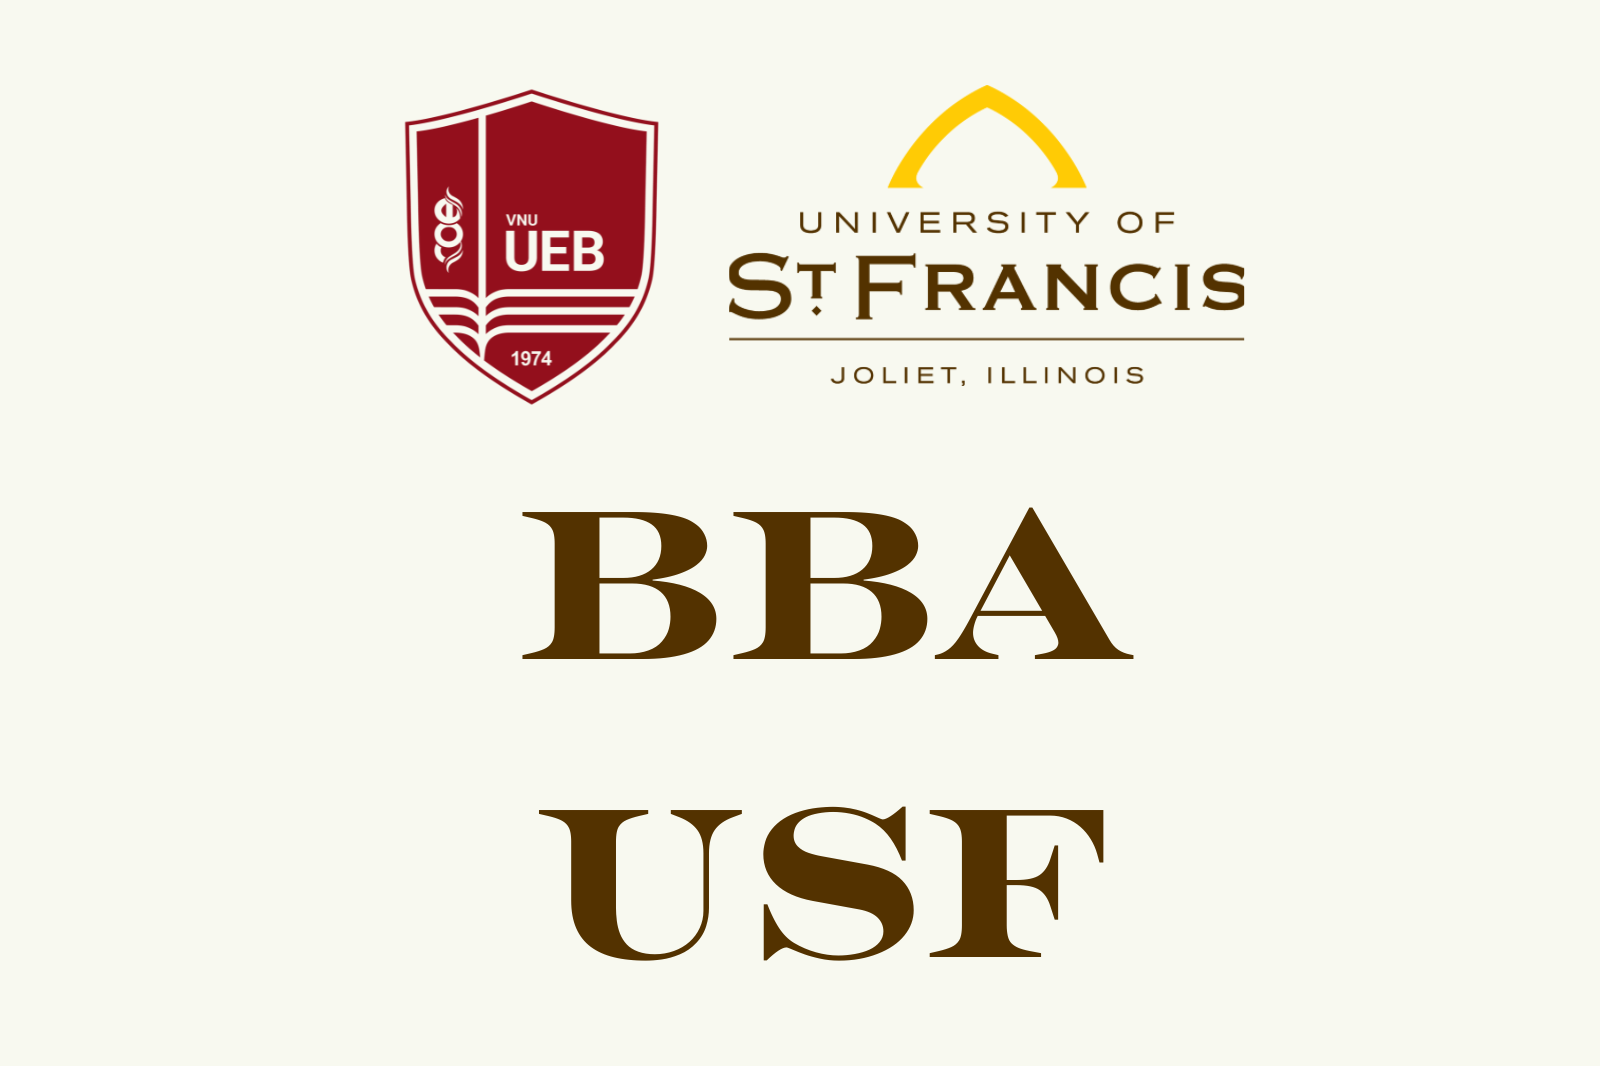 Sổ tay Sinh viên Chương trình Cử nhân Quản trị kinh doanh - Đại học St. Francis (BBA USF)